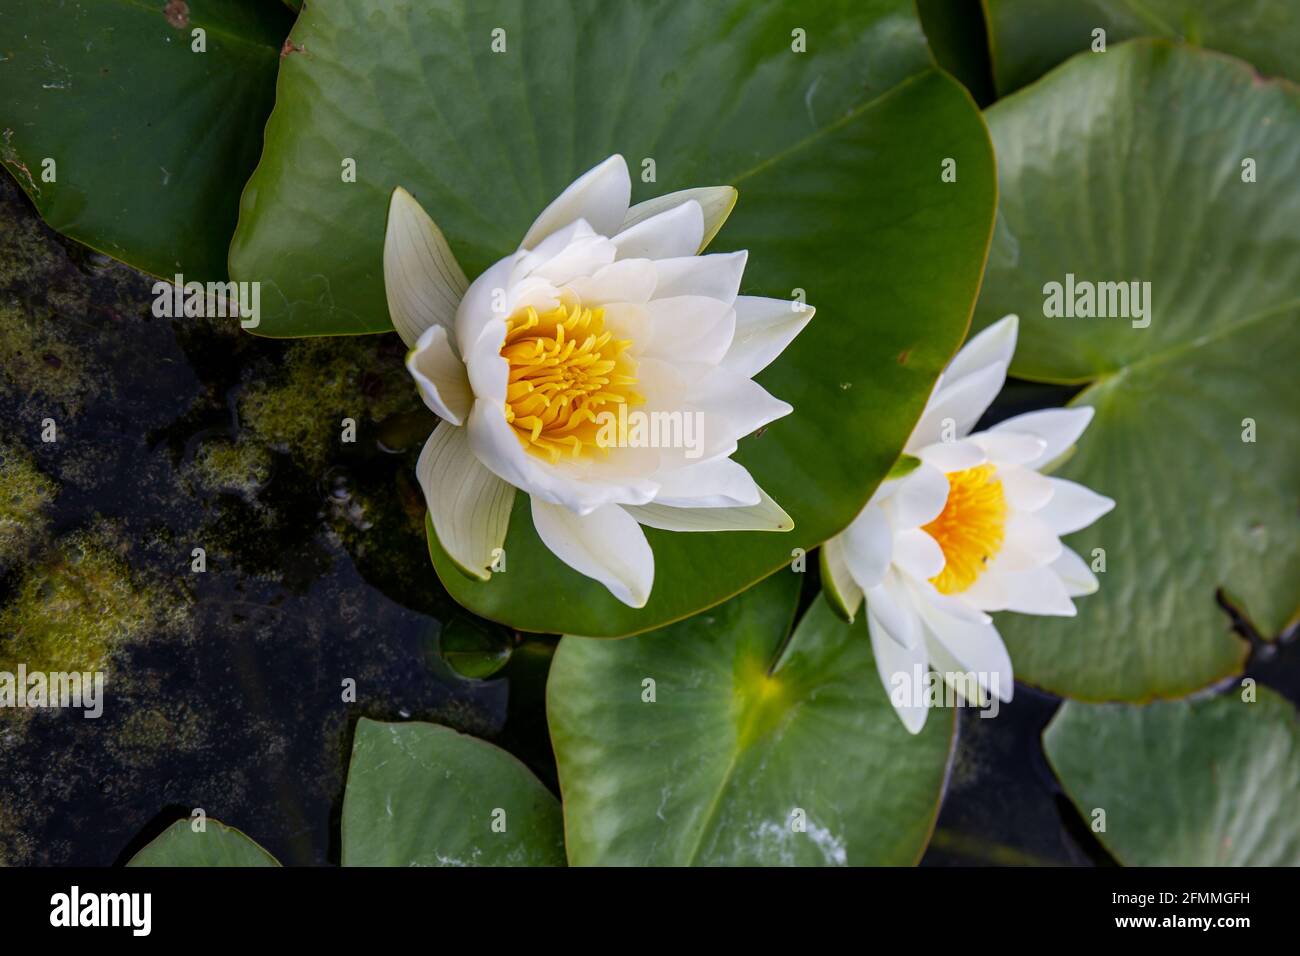 Zwei 'Alba'-Wasserlilie (Lotus) mit leuchtend gelben Staubgefäßen in einem Teich. Die großen runden Blätter schweben auf dem Wasser und unterstützen die Blüte. Spa-Konzept. Stockfoto